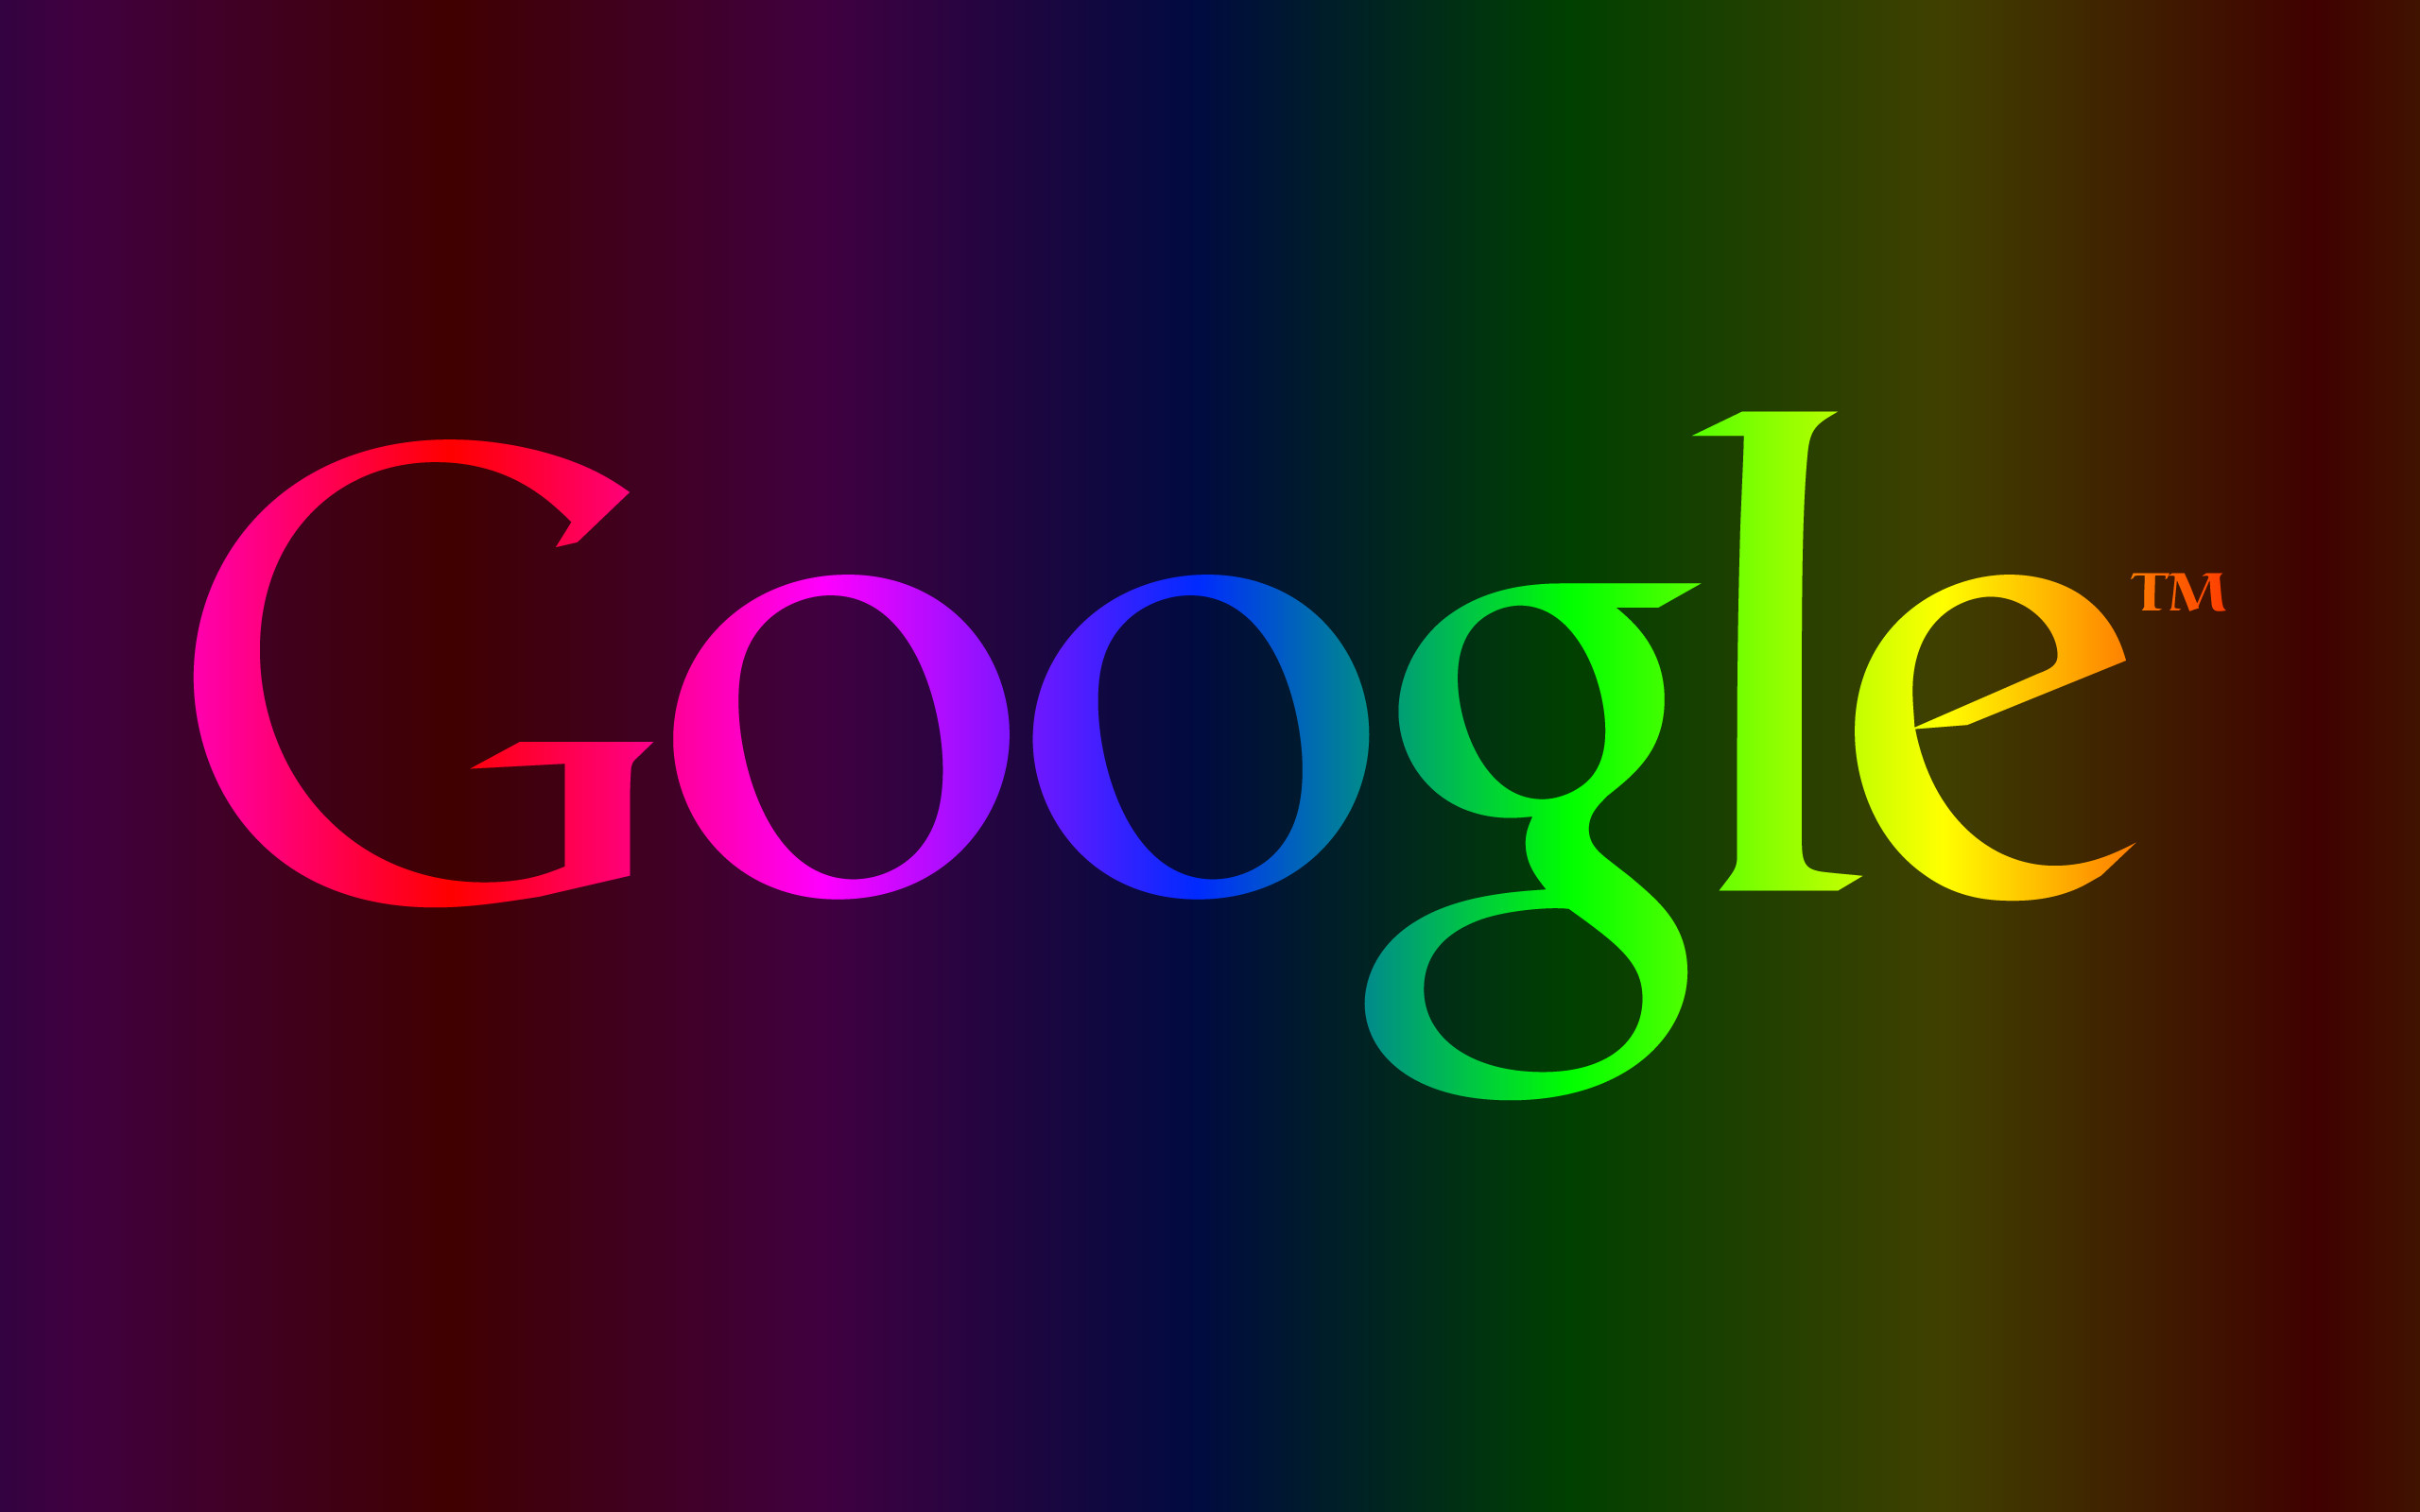 グーグル壁紙背景,テキスト,フォント,緑,紫の,グラフィックデザイン